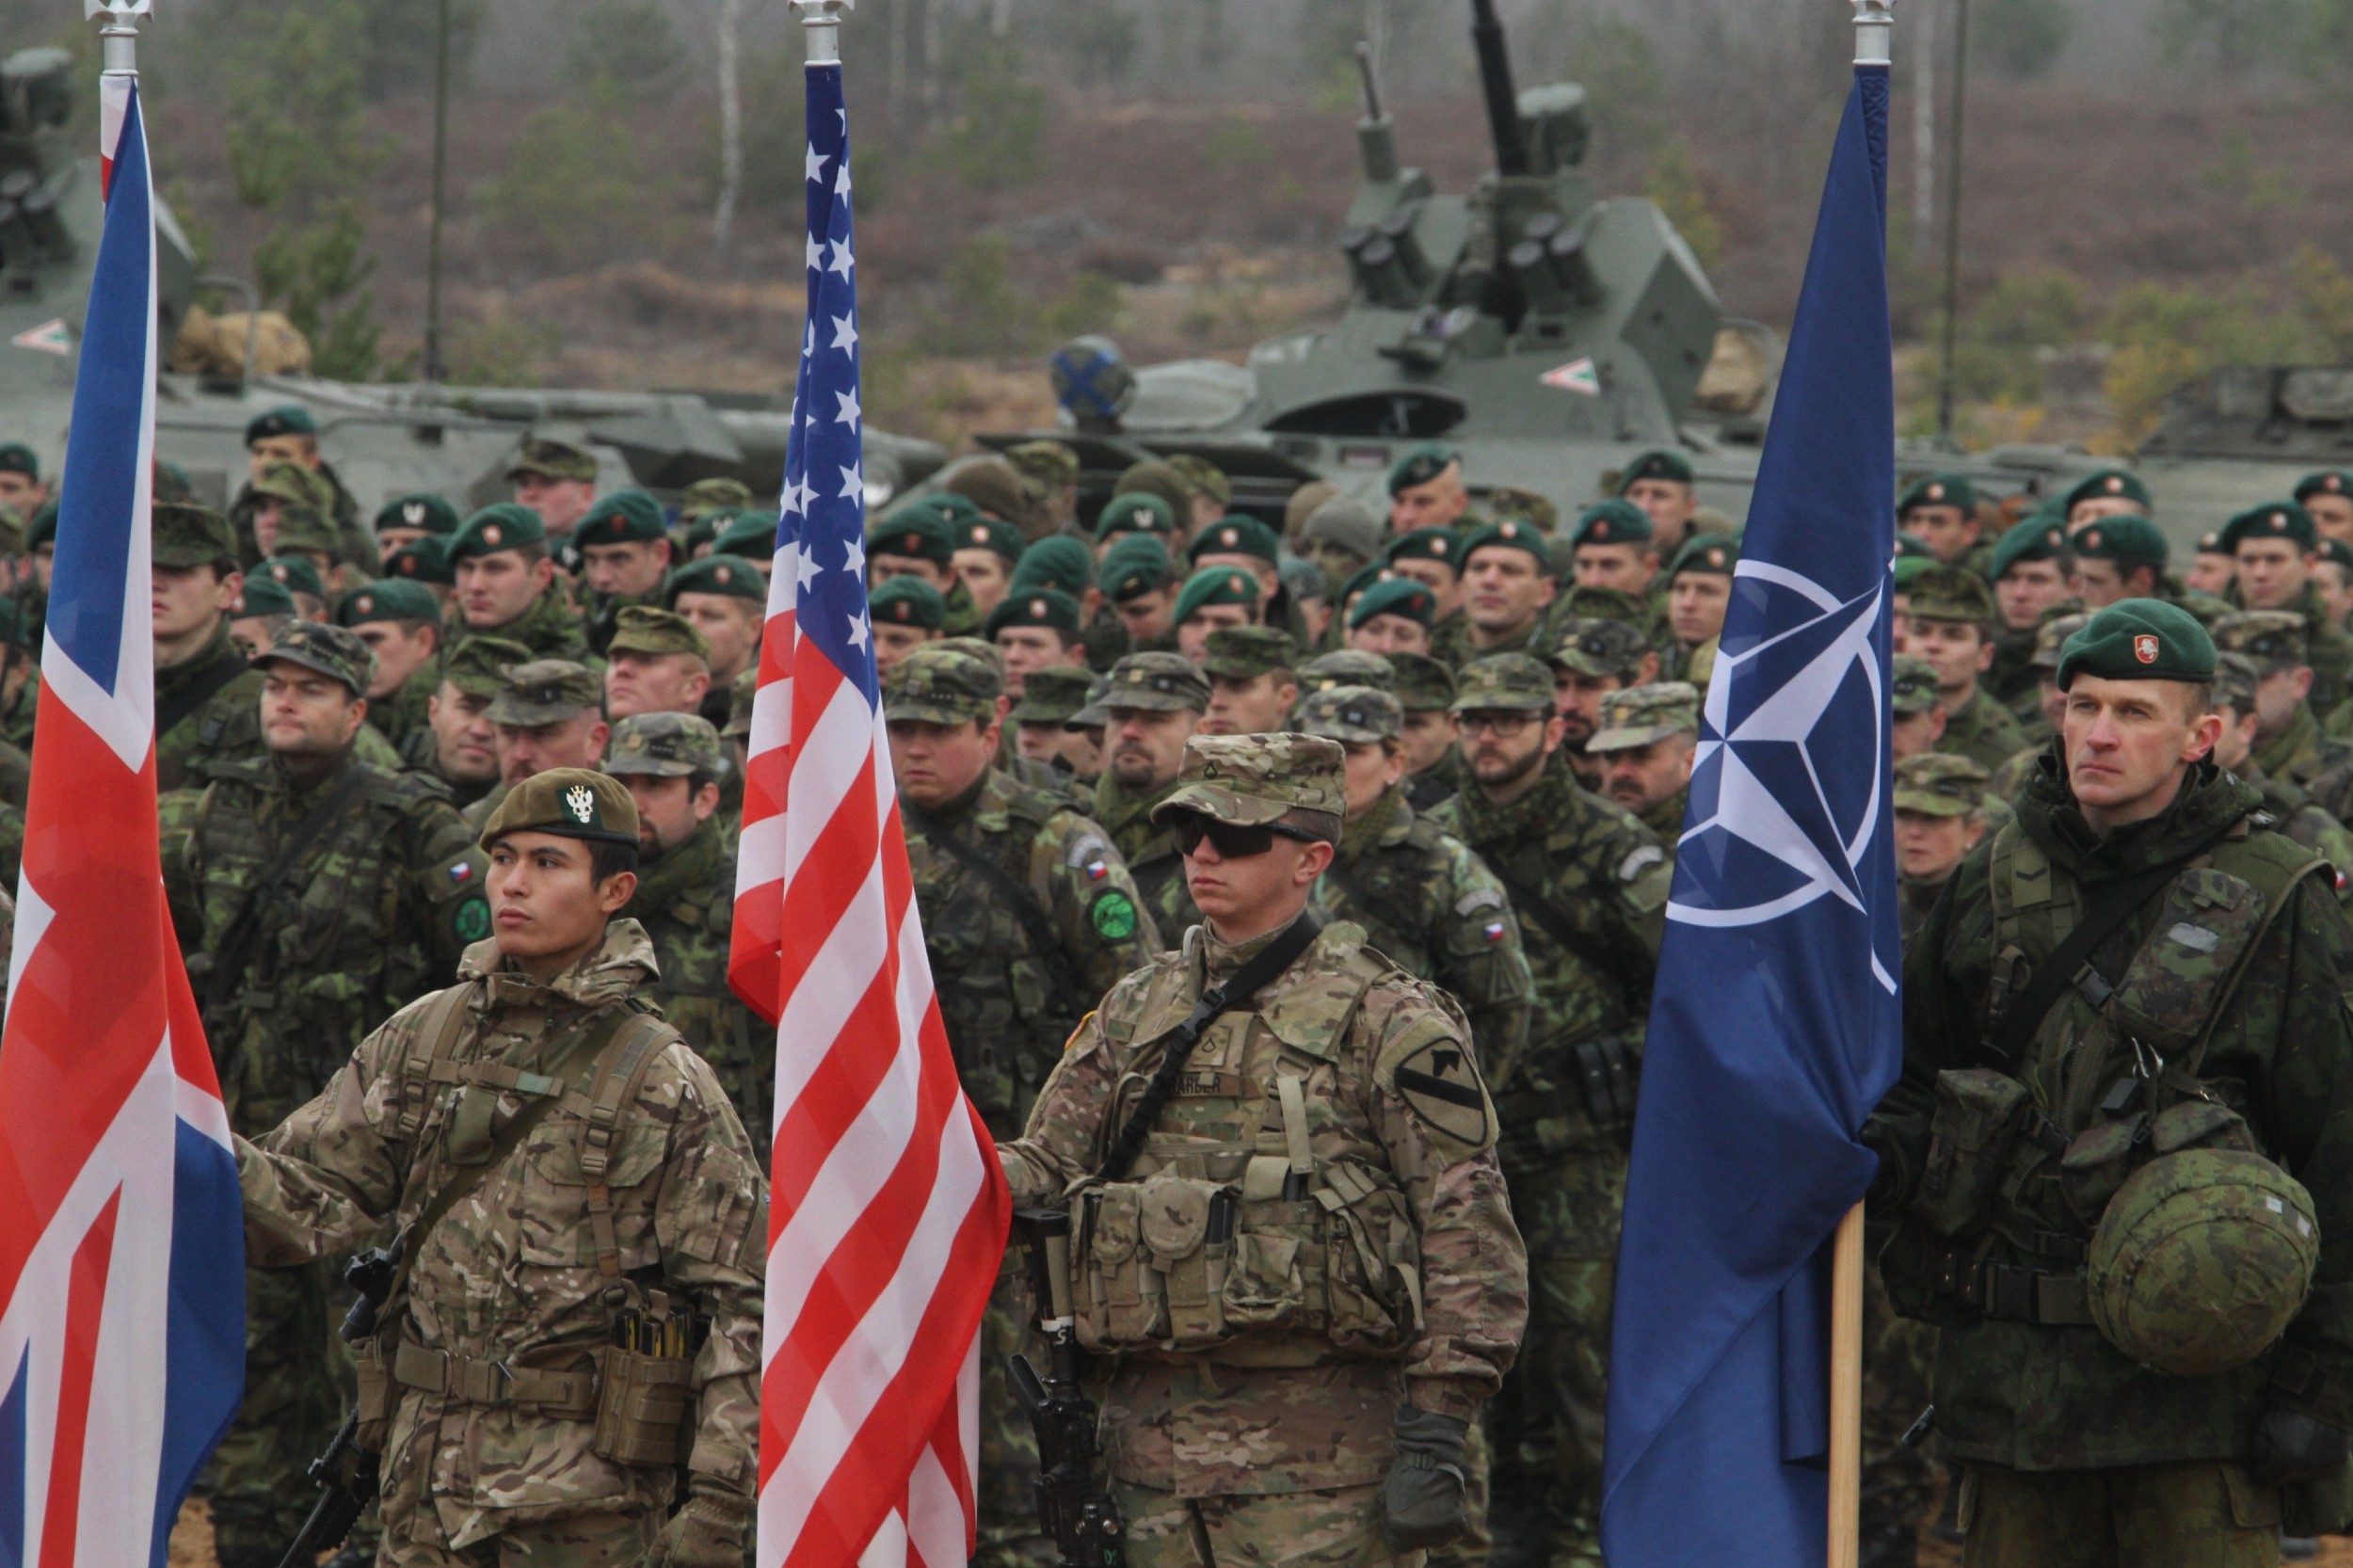 Američki i britanski vojnici drže zastave Velike Britanije, NATO i Sjedinjenih Država tokom NATO vojne vežbe, Pabrade, Litvanija, 13. novembar 2014. (Foto: Staff Sgt. Keith Anderson)